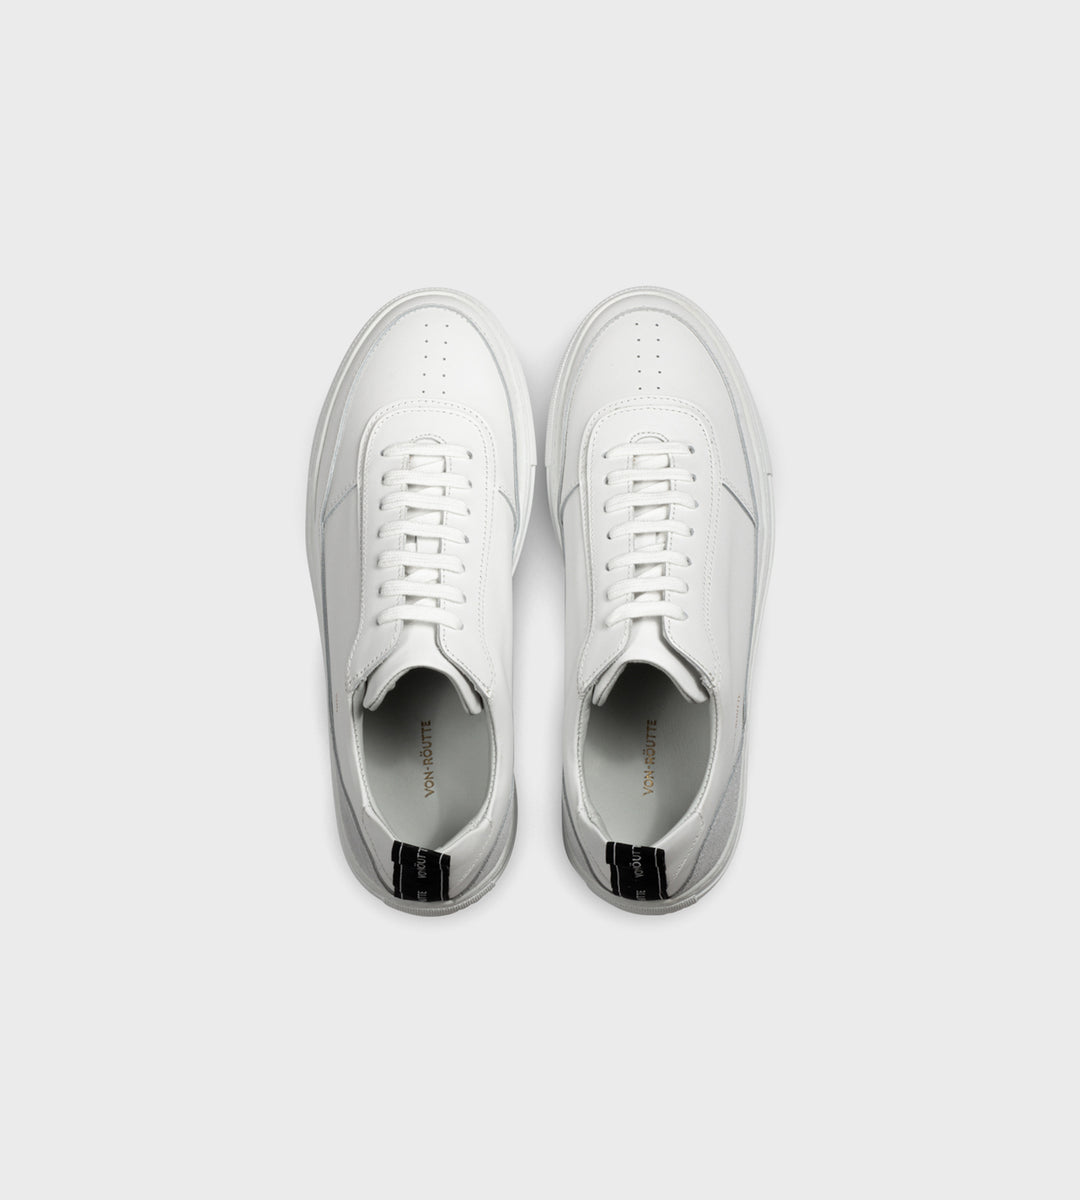 Von Routte | Munich Sneaker | White